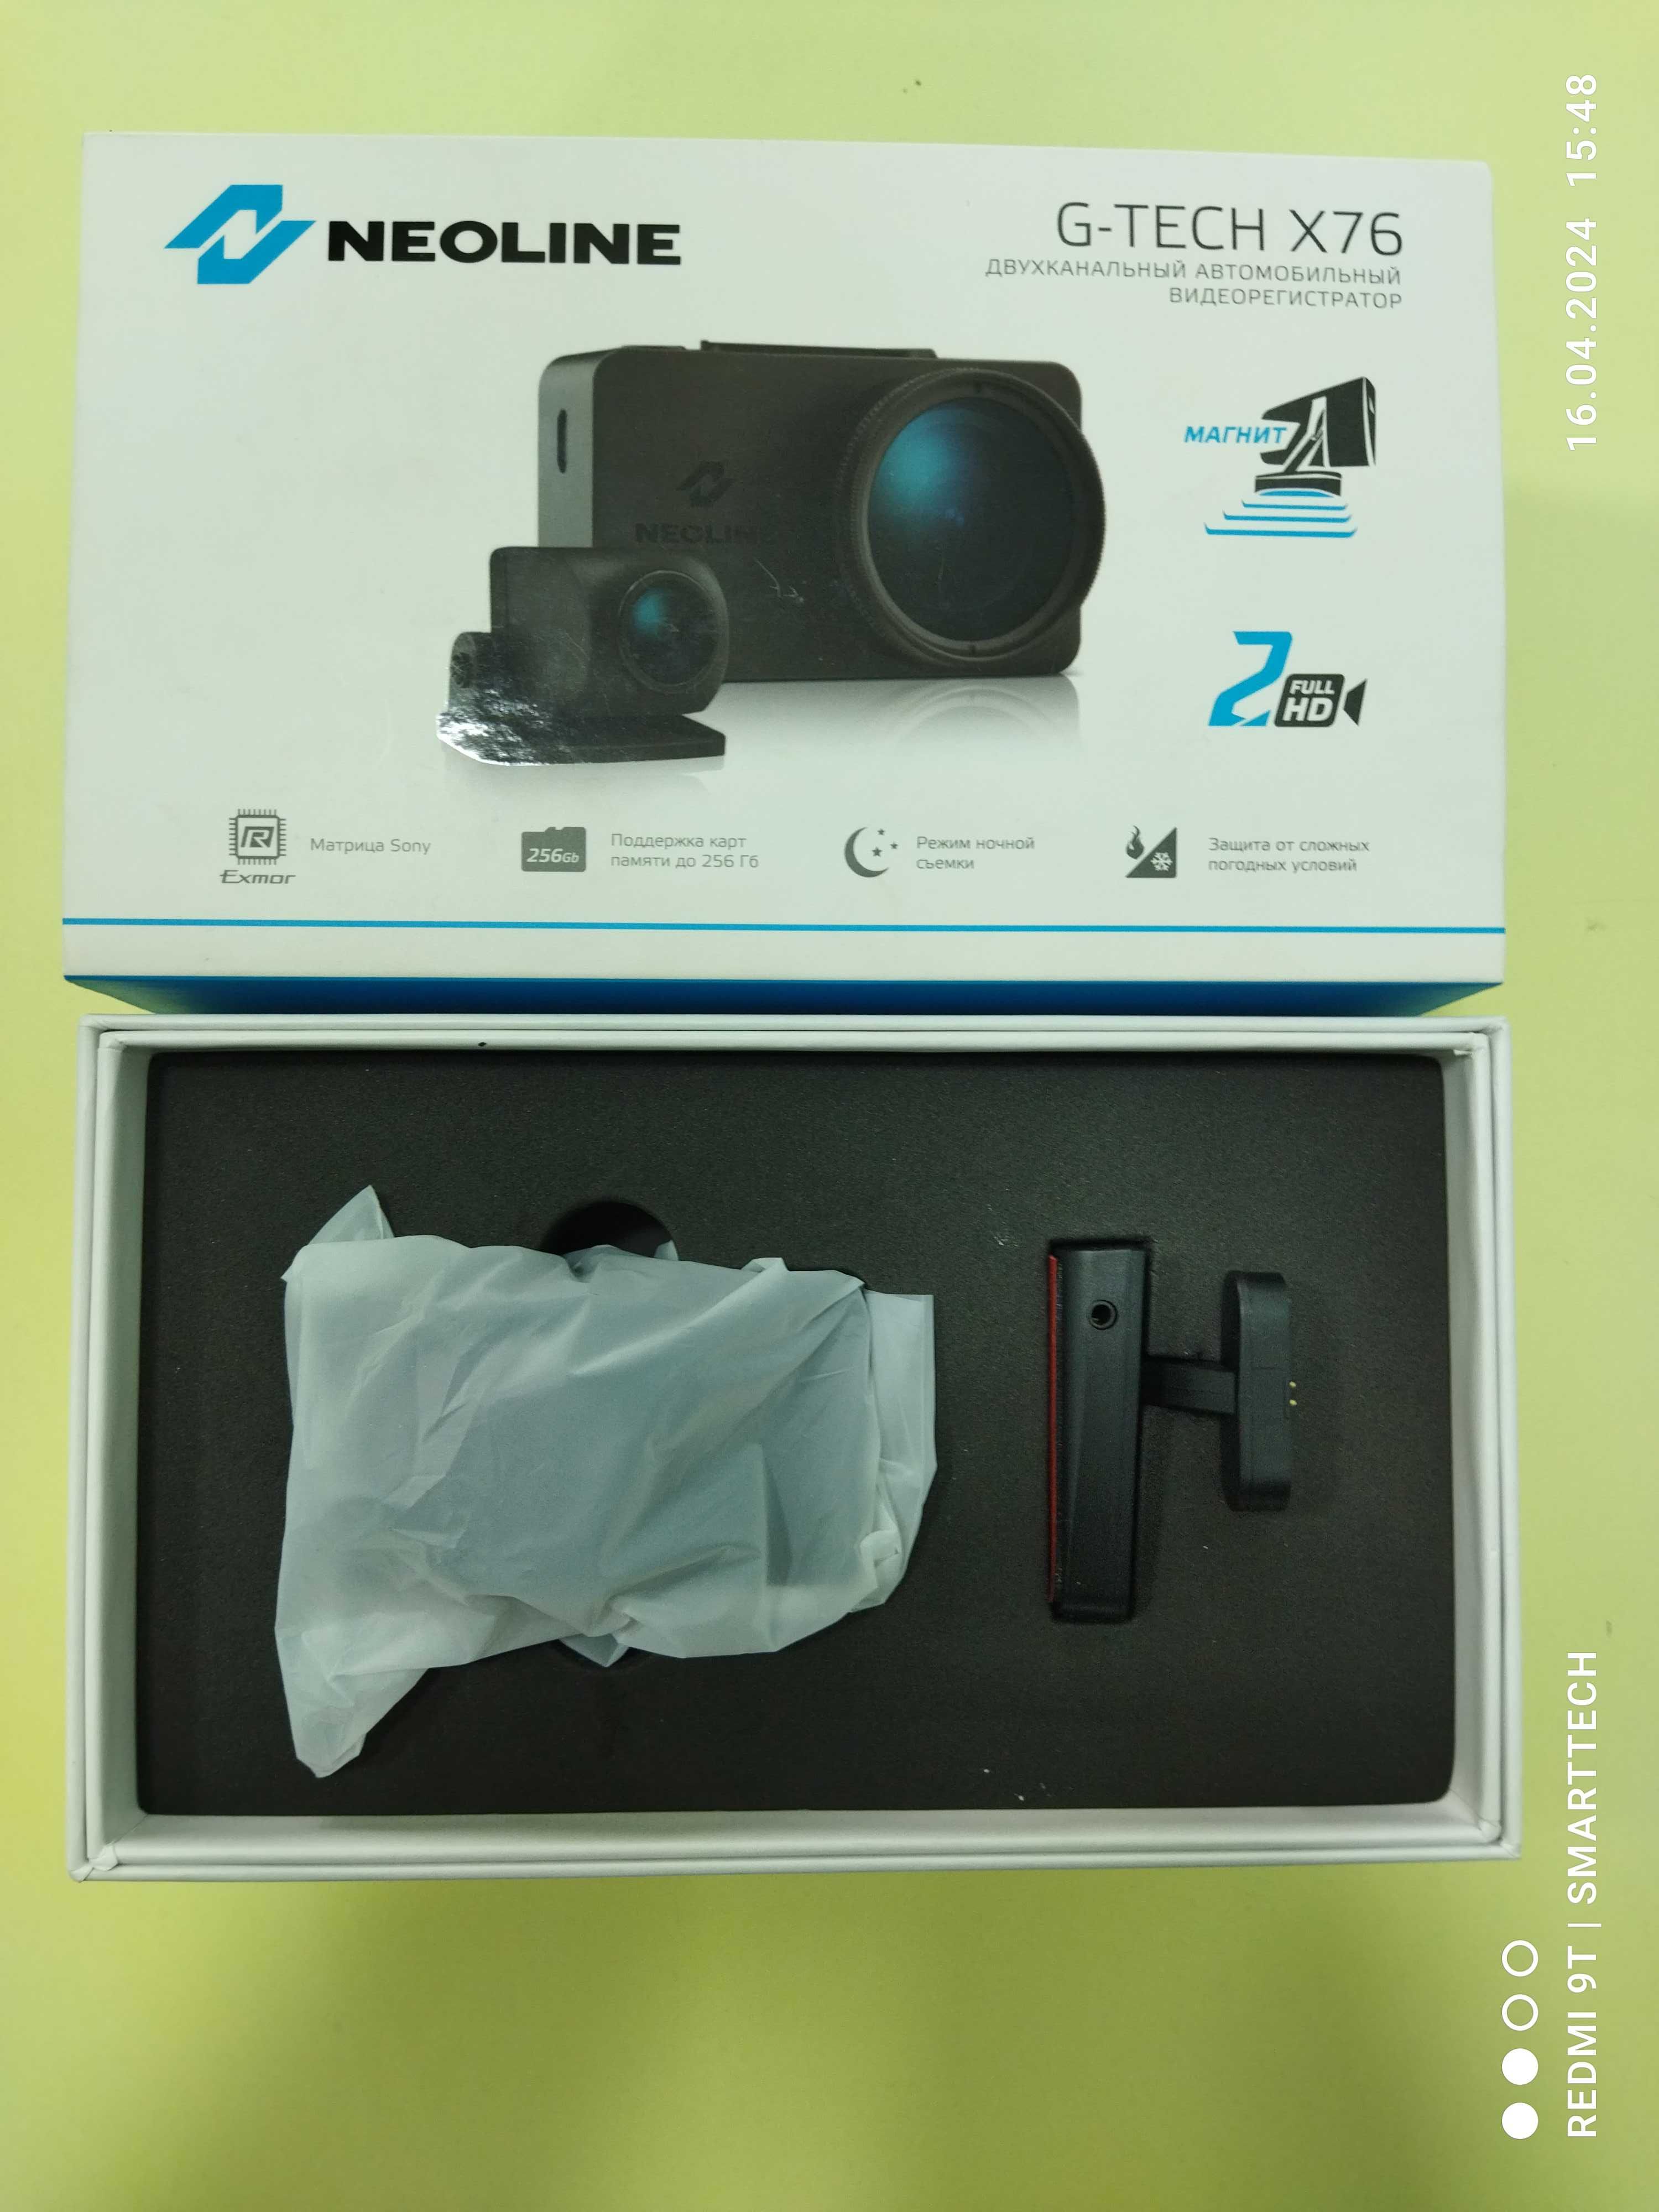 Продается видеорегистратор Neoline G-Tech X76. В идеальном состоянии